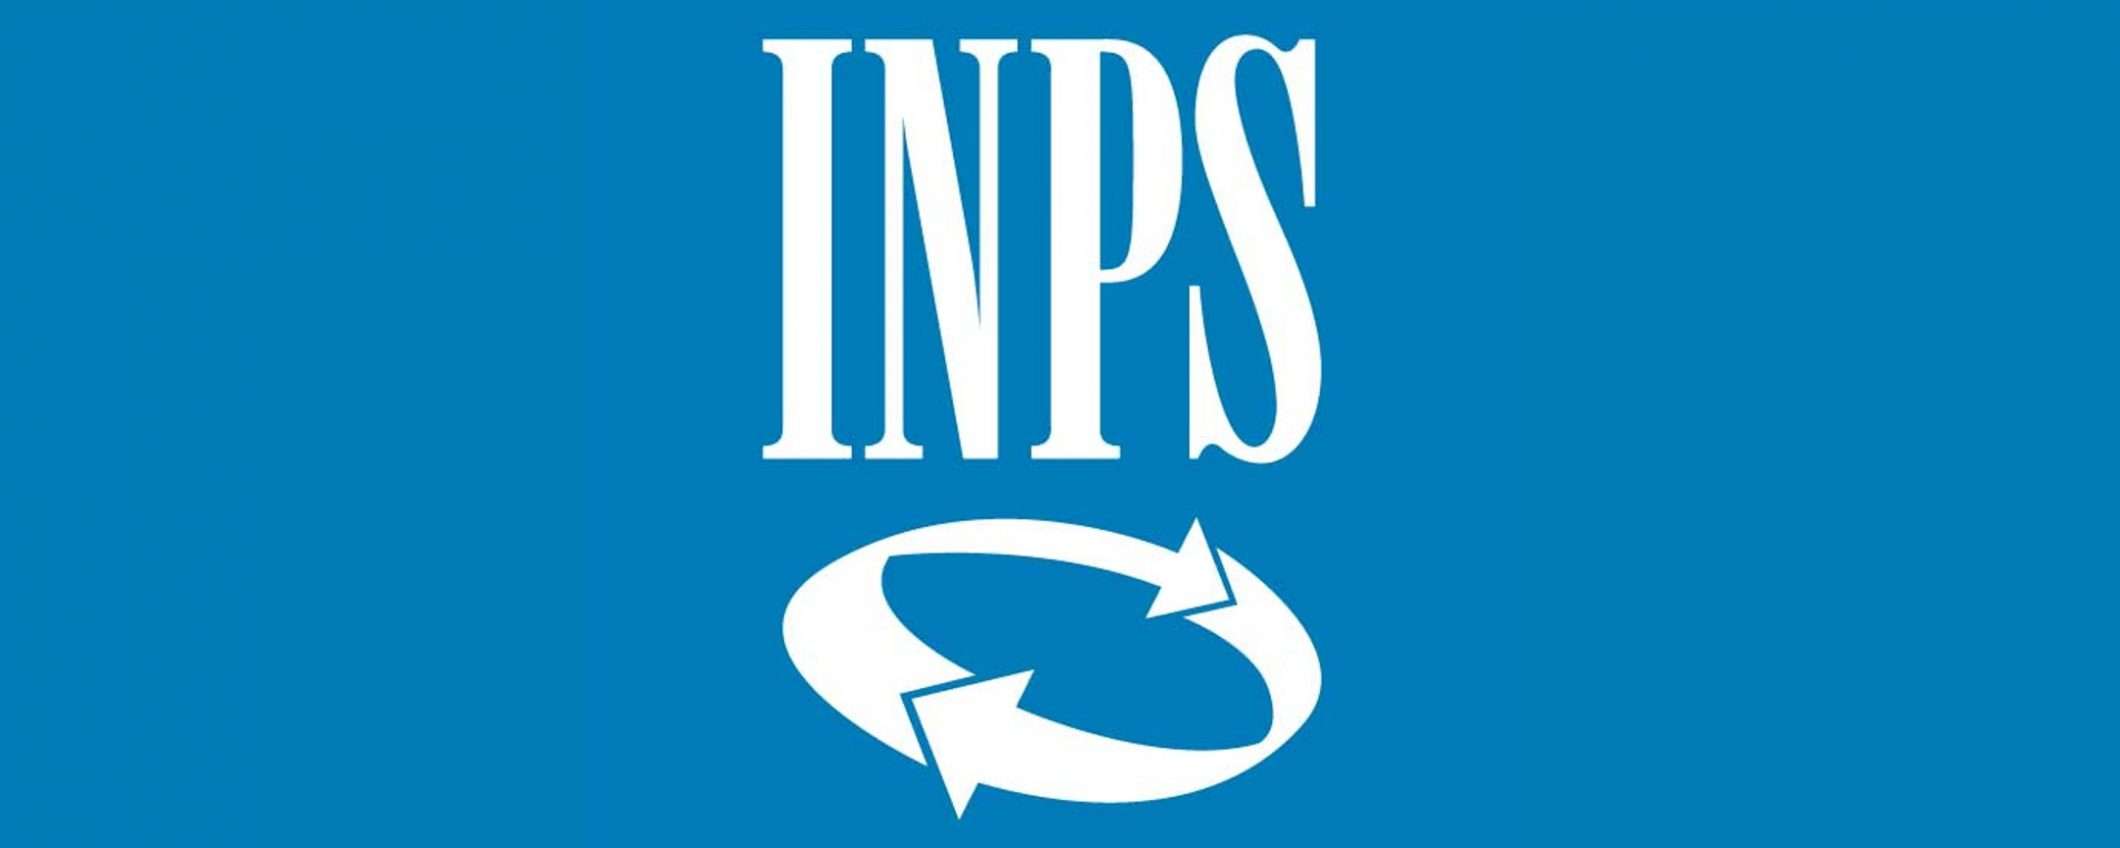 INPS: il sito ora funziona regolarmente